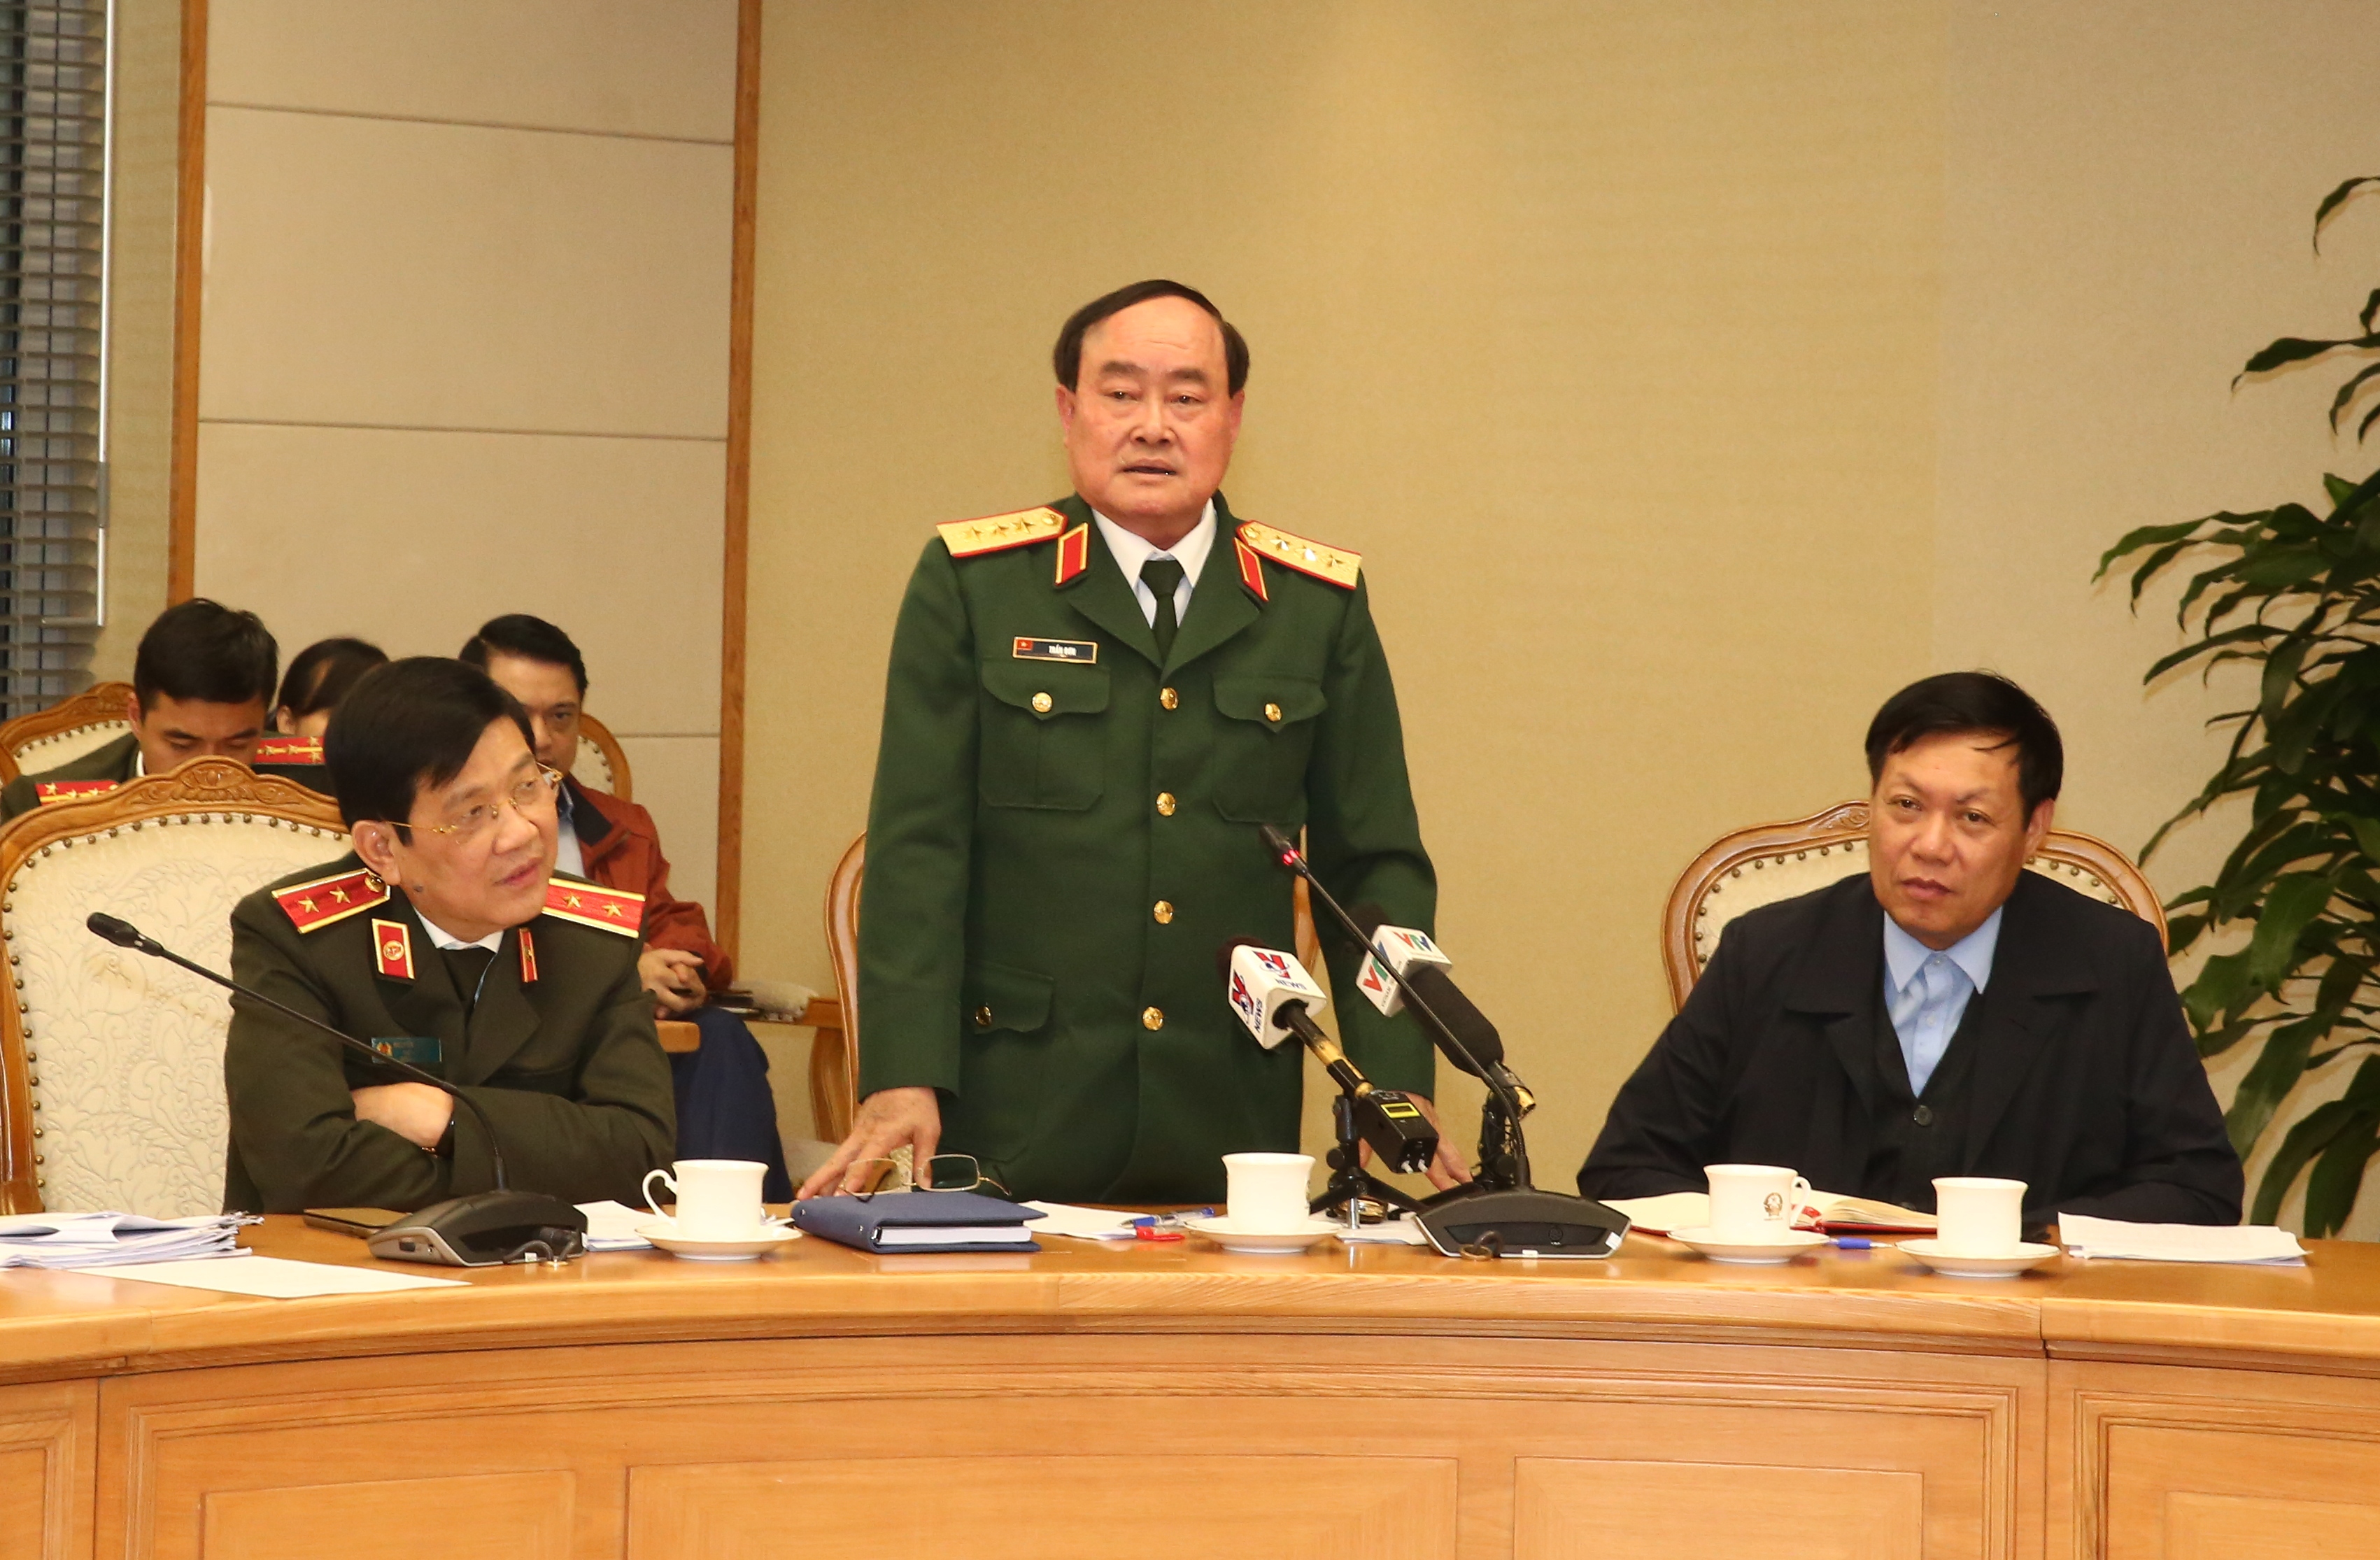 Thượng tướng Trần Đơn phát biểu tại cuộc họp. Ảnh VGP/Trần Mạnh